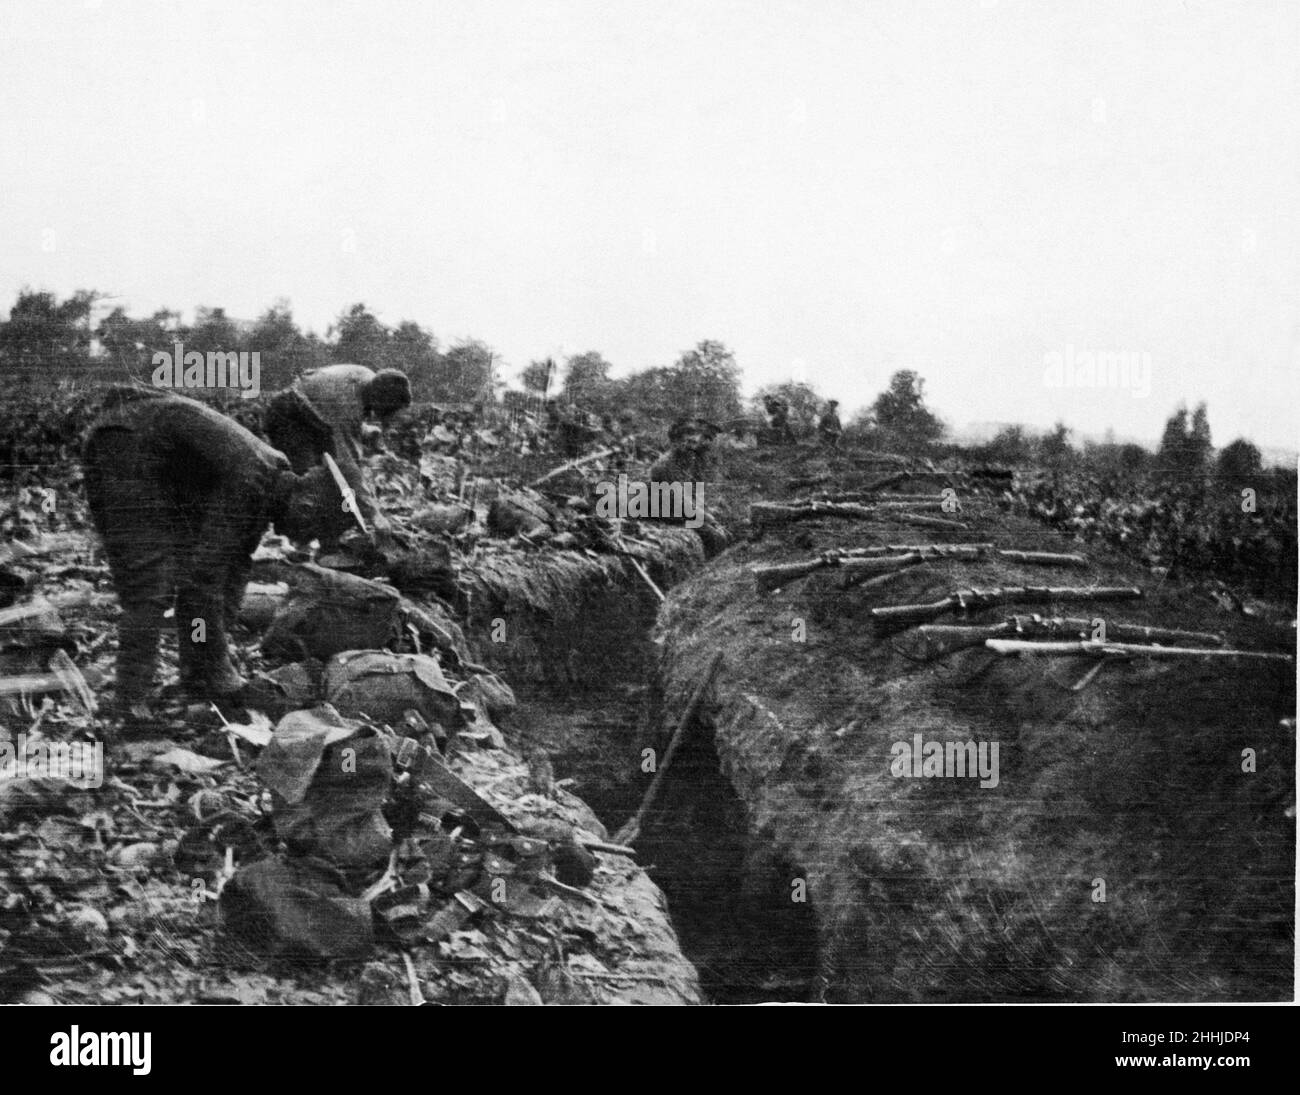 Britische Truppen nutzen die Gelegenheit eines trockenen Wetters, um ihre Kits zum Trocknen und den Graben auszulegen, um sich in einem Bereich der Front, in dem die Deutschen nicht so aktiv sind, selbst abzutropfen. 1st. Februar 1915 Stockfoto